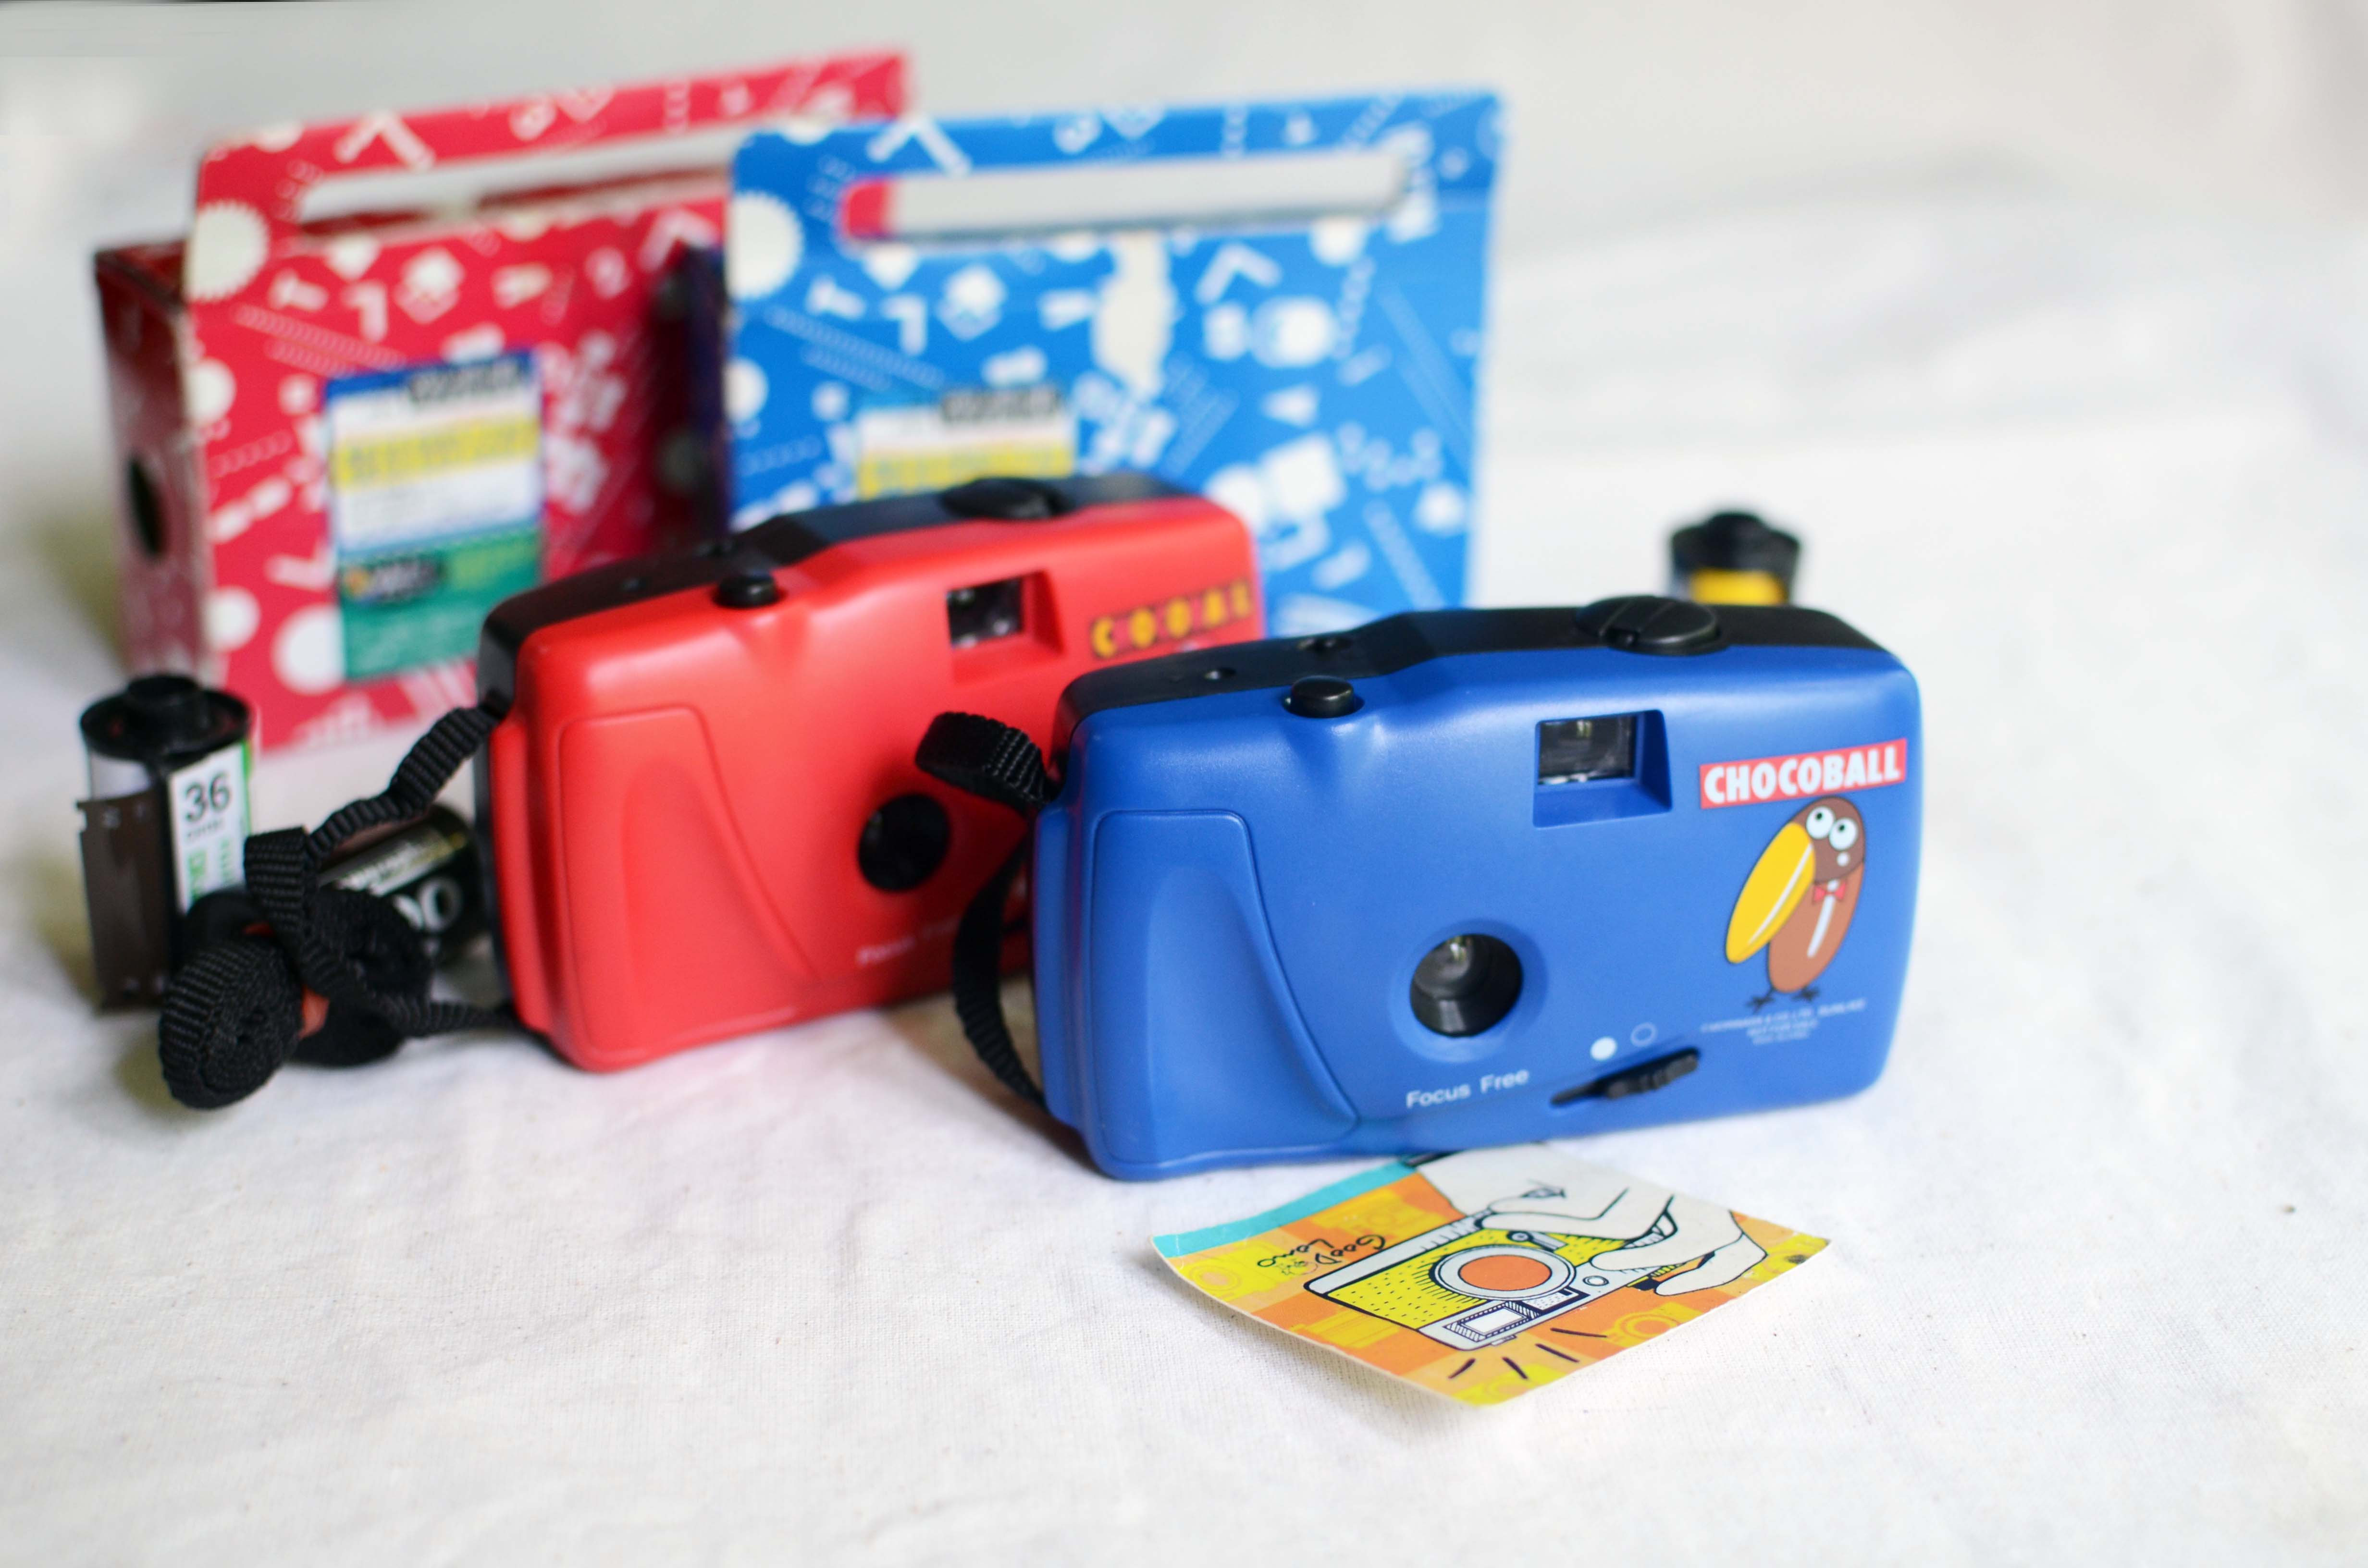 กล้องฟิล์ม กล้องทอย Chocoball สีแดง สีน้ำเงิน